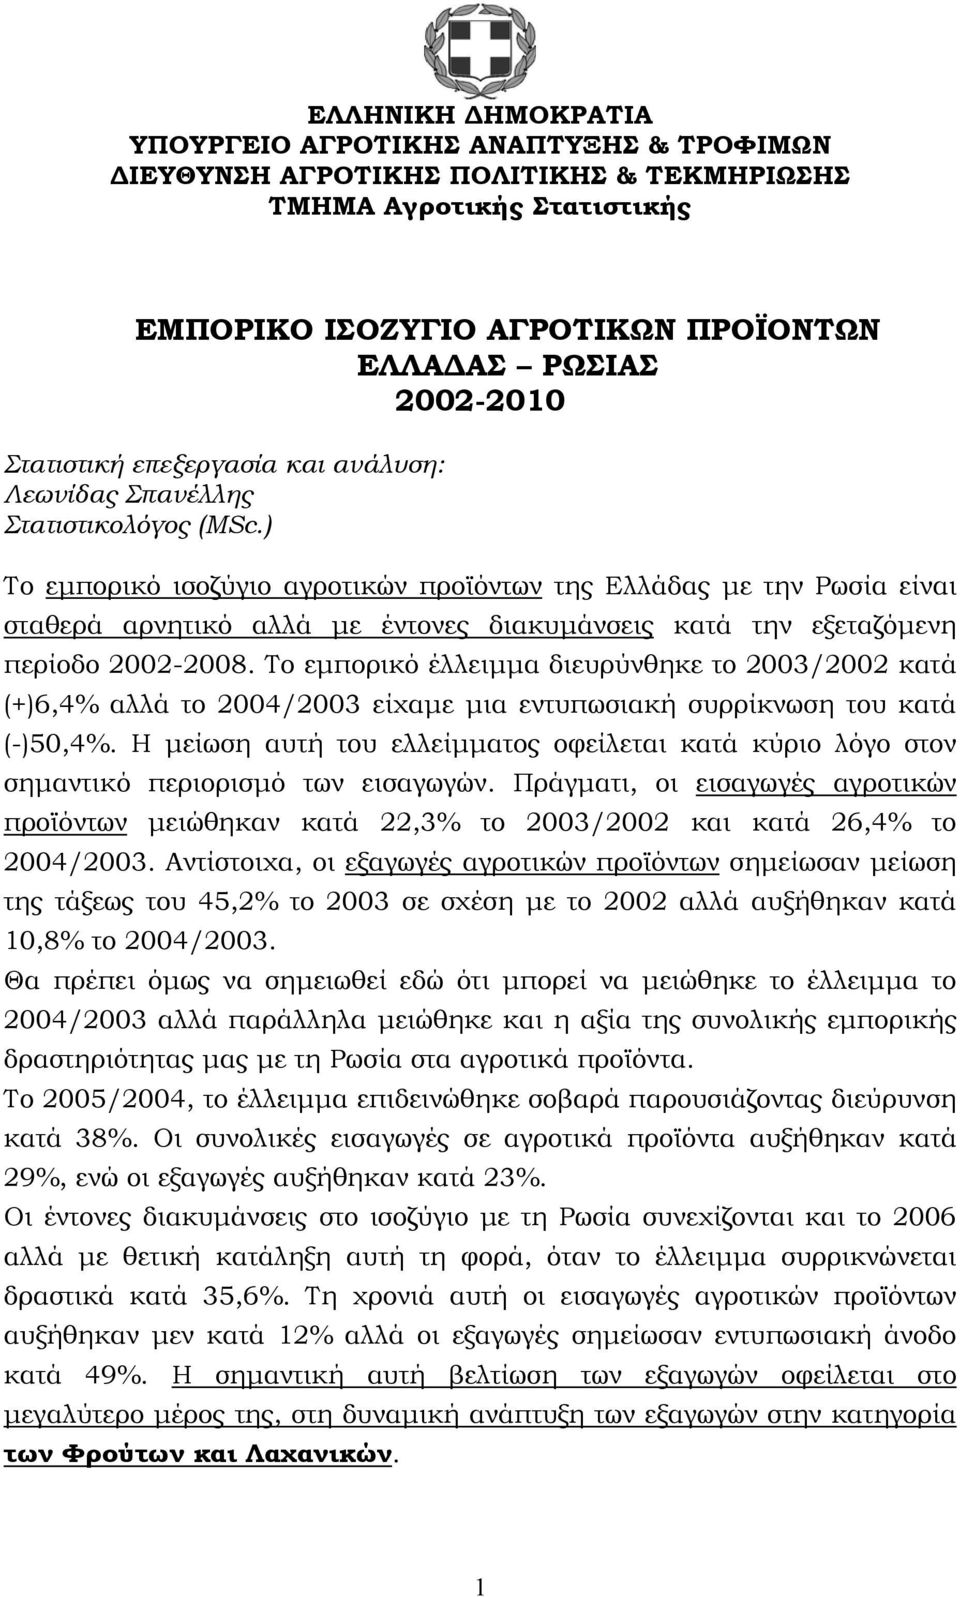 ) Το εμπορικό ισοζύγιο αγροτικών προϊόντων της Ελλάδας με την Ρωσία είναι σταθερά αρνητικό αλλά με έντονες διακυμάνσεις κατά την εξεταζόμενη περίοδο 2002-2008.